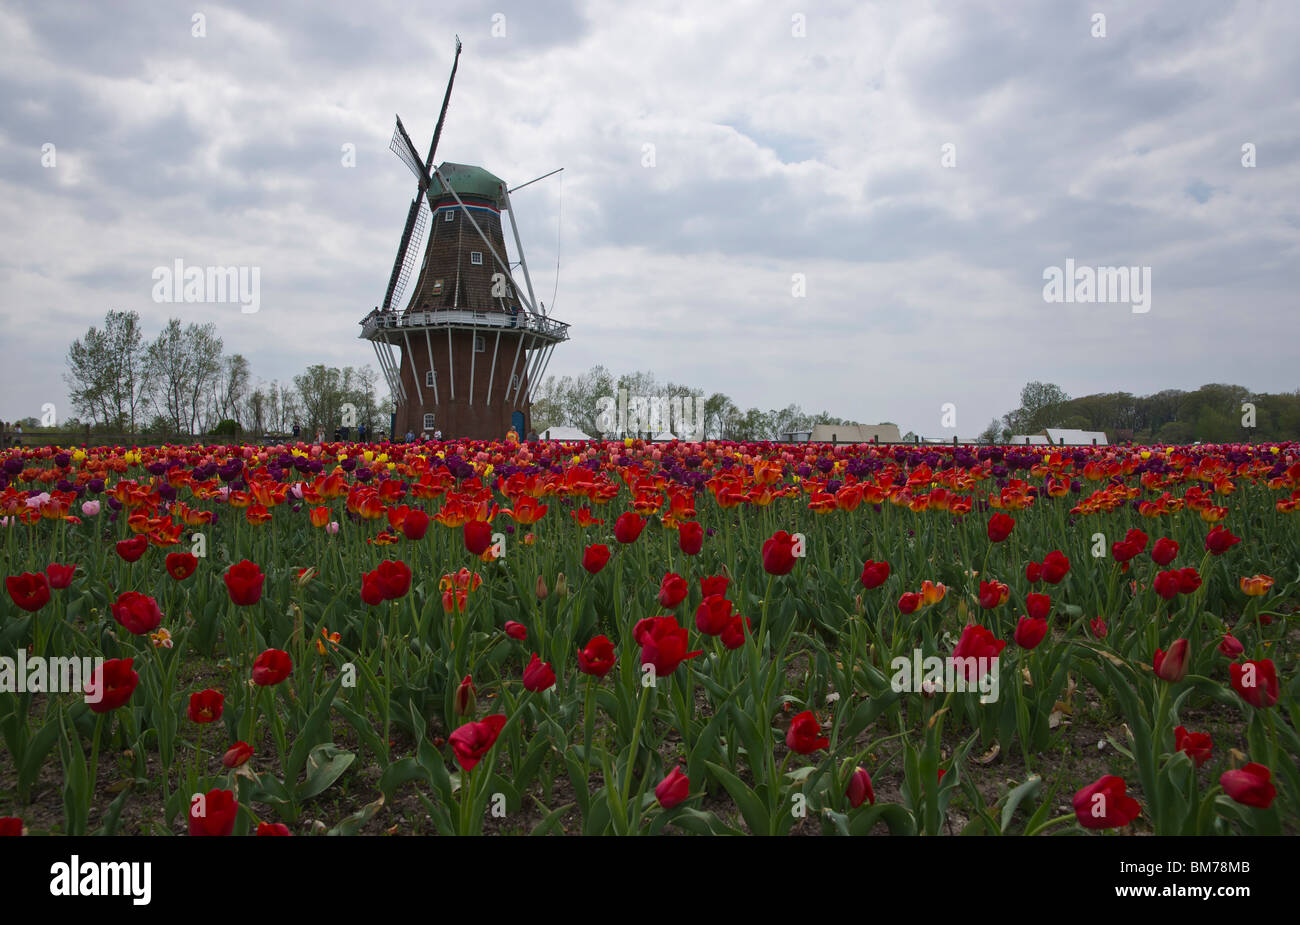 Historique hollandais moulin à vent de Zwaan avec champ de tulipes au premier plan dans Windmill Island Holland Michigan jardin public hi-res Banque D'Images